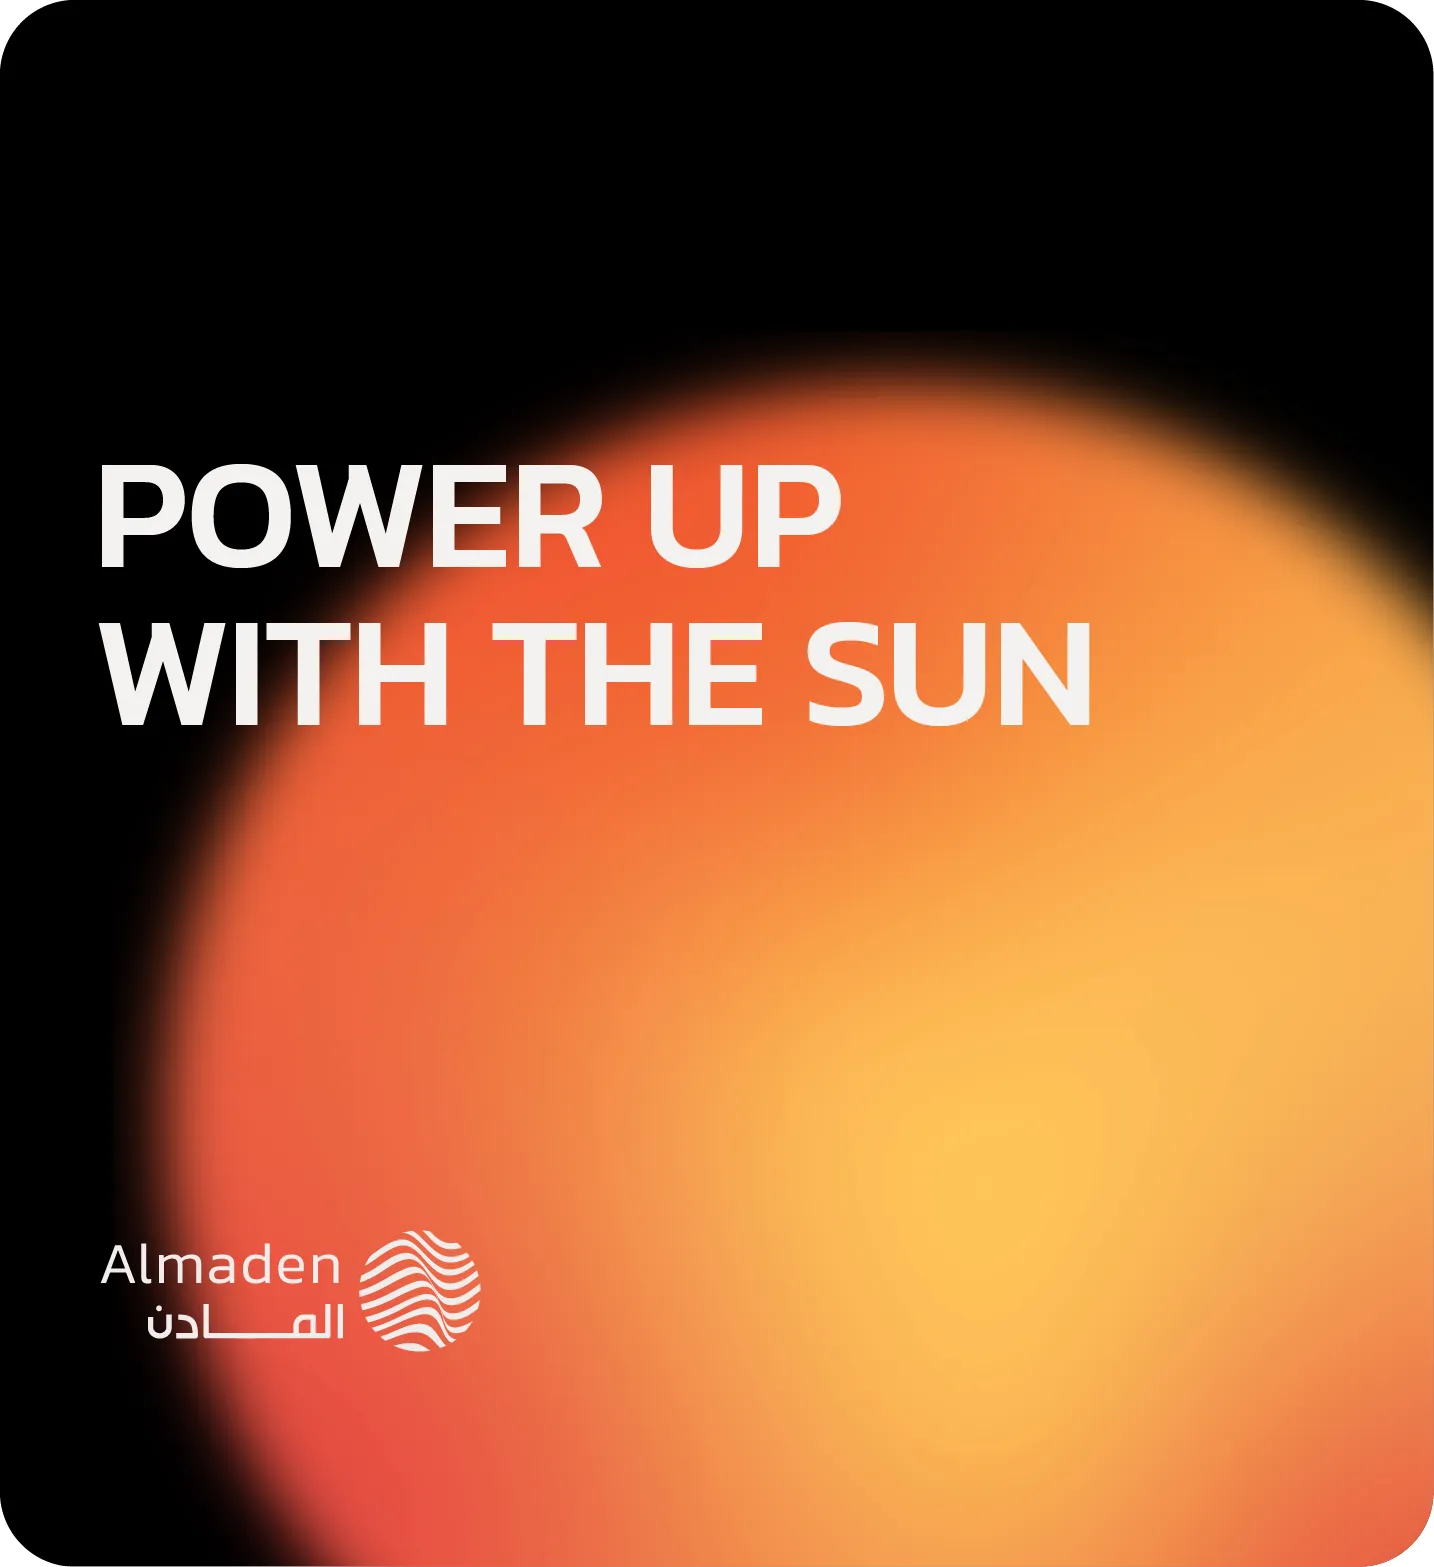 Almaden Energy Brand